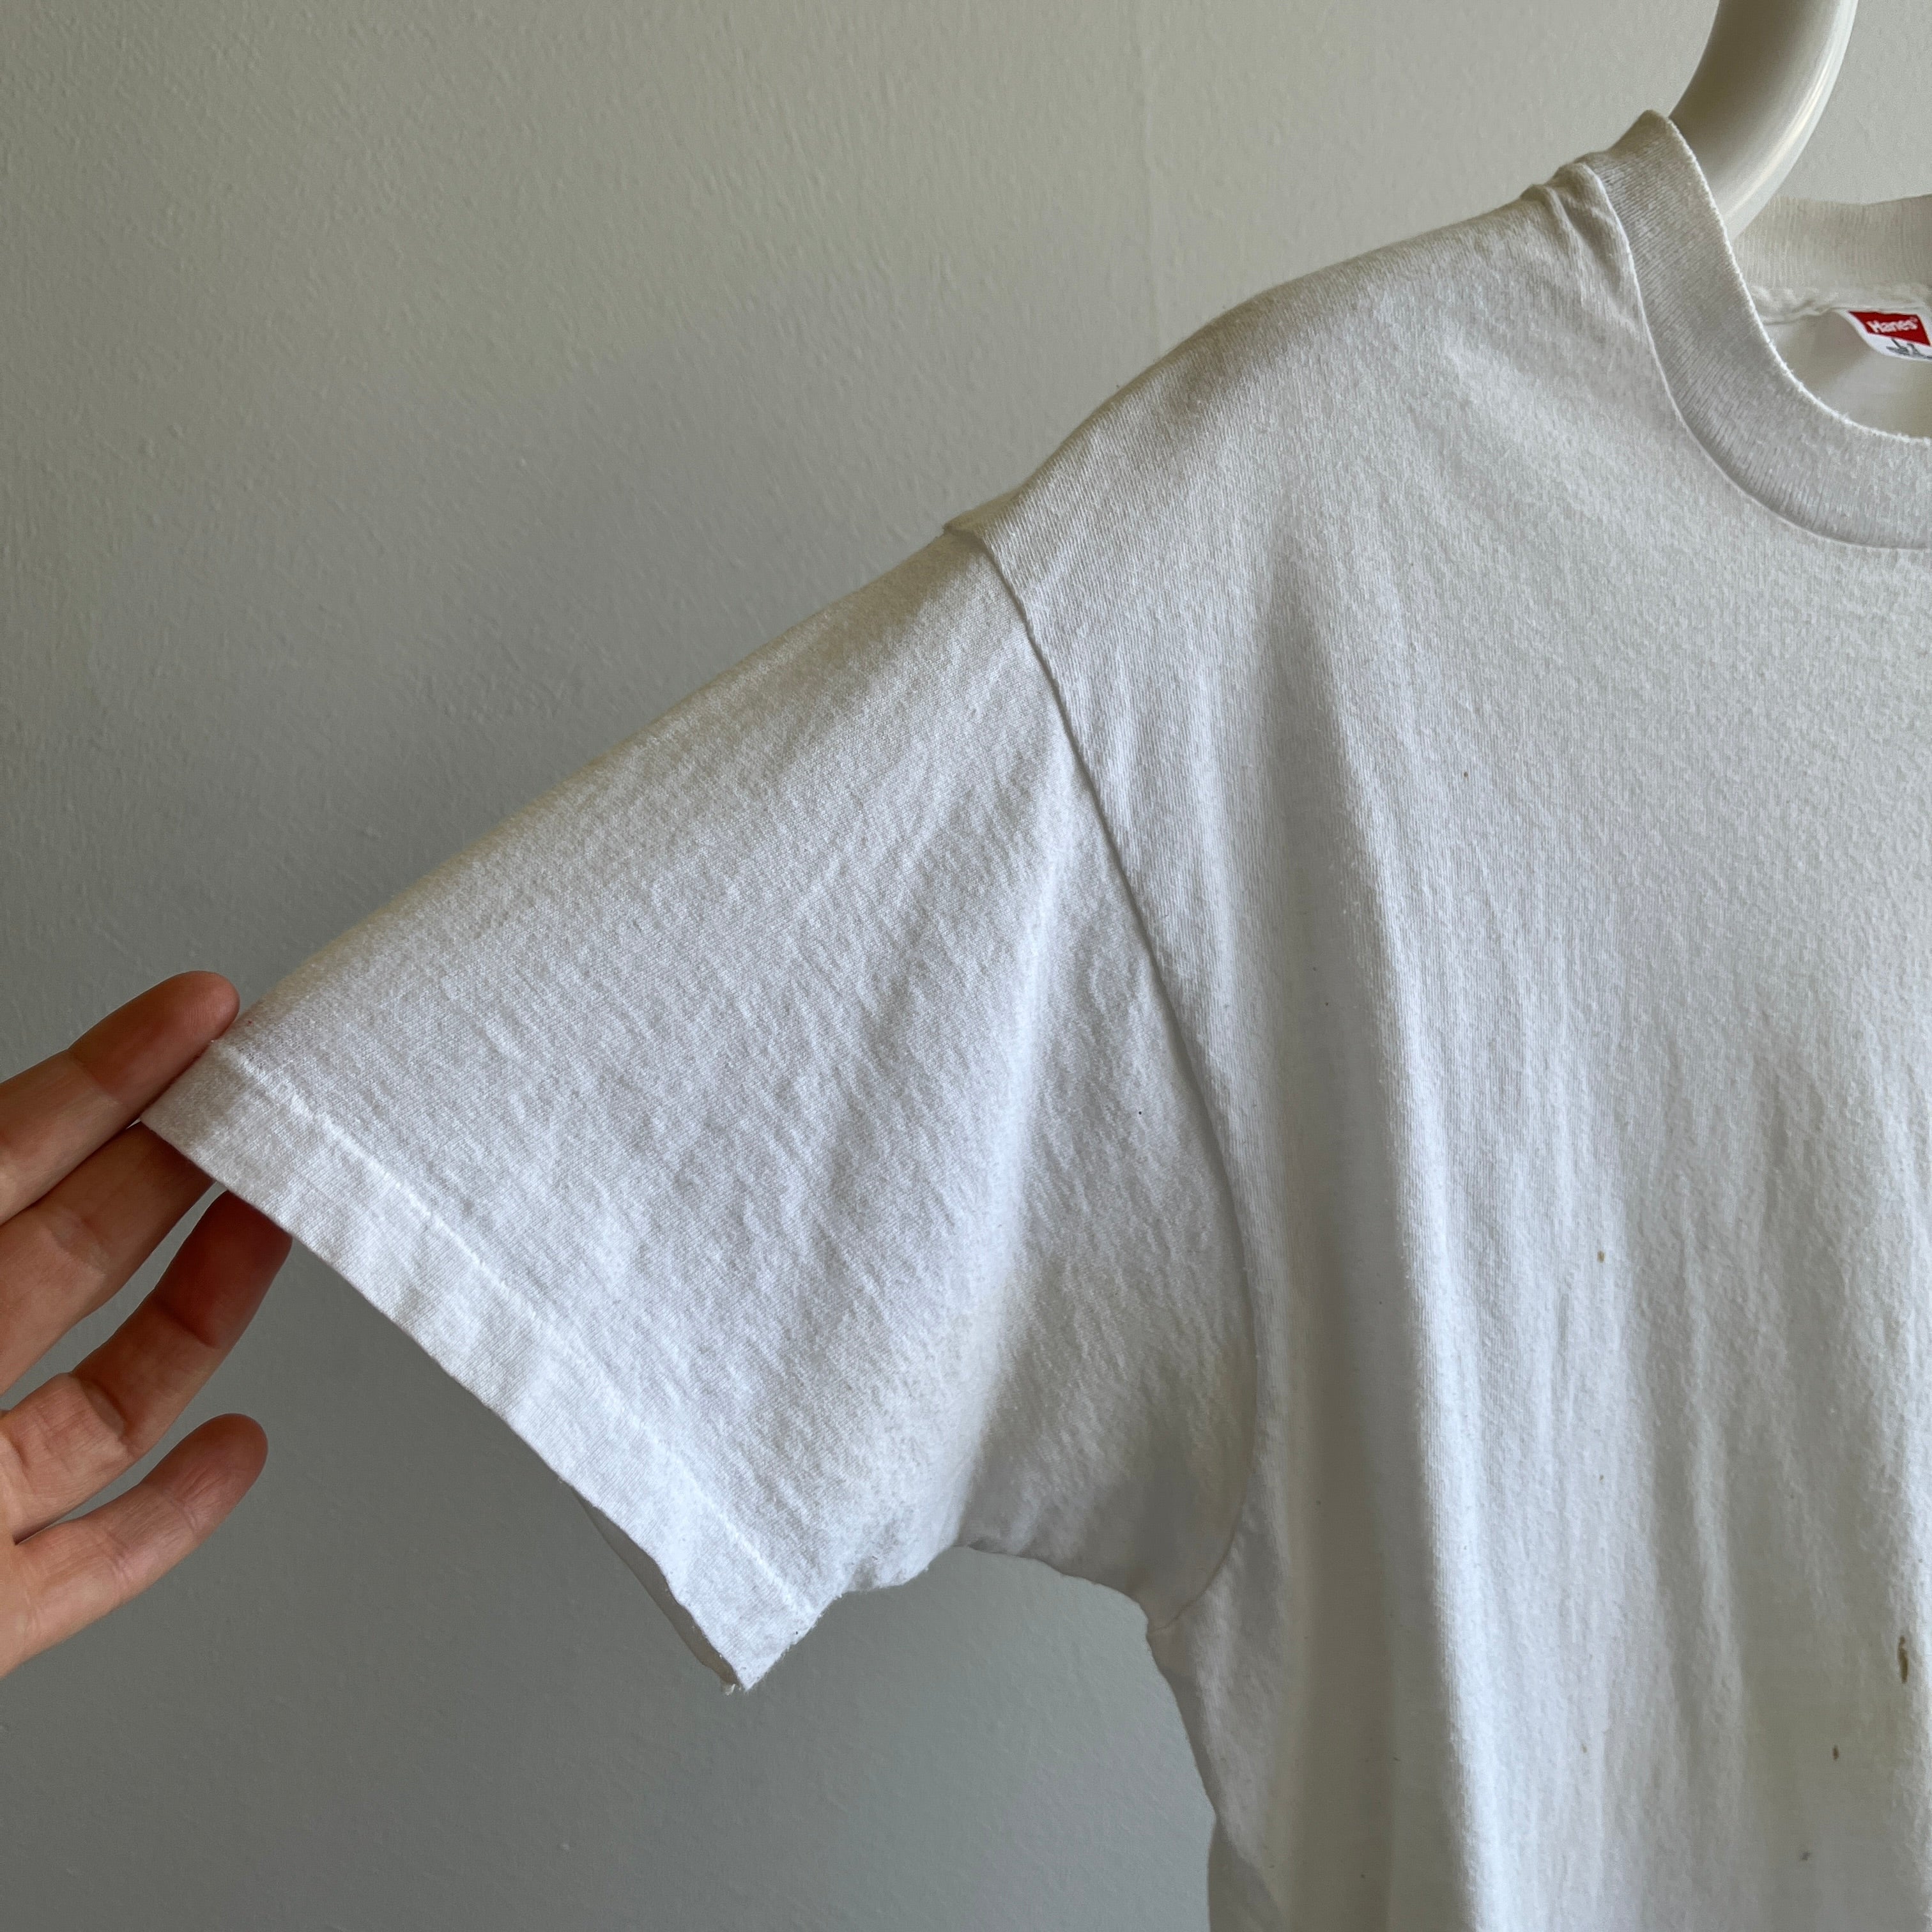 T-shirt Hanes blanc teinté de peinture des années 1980